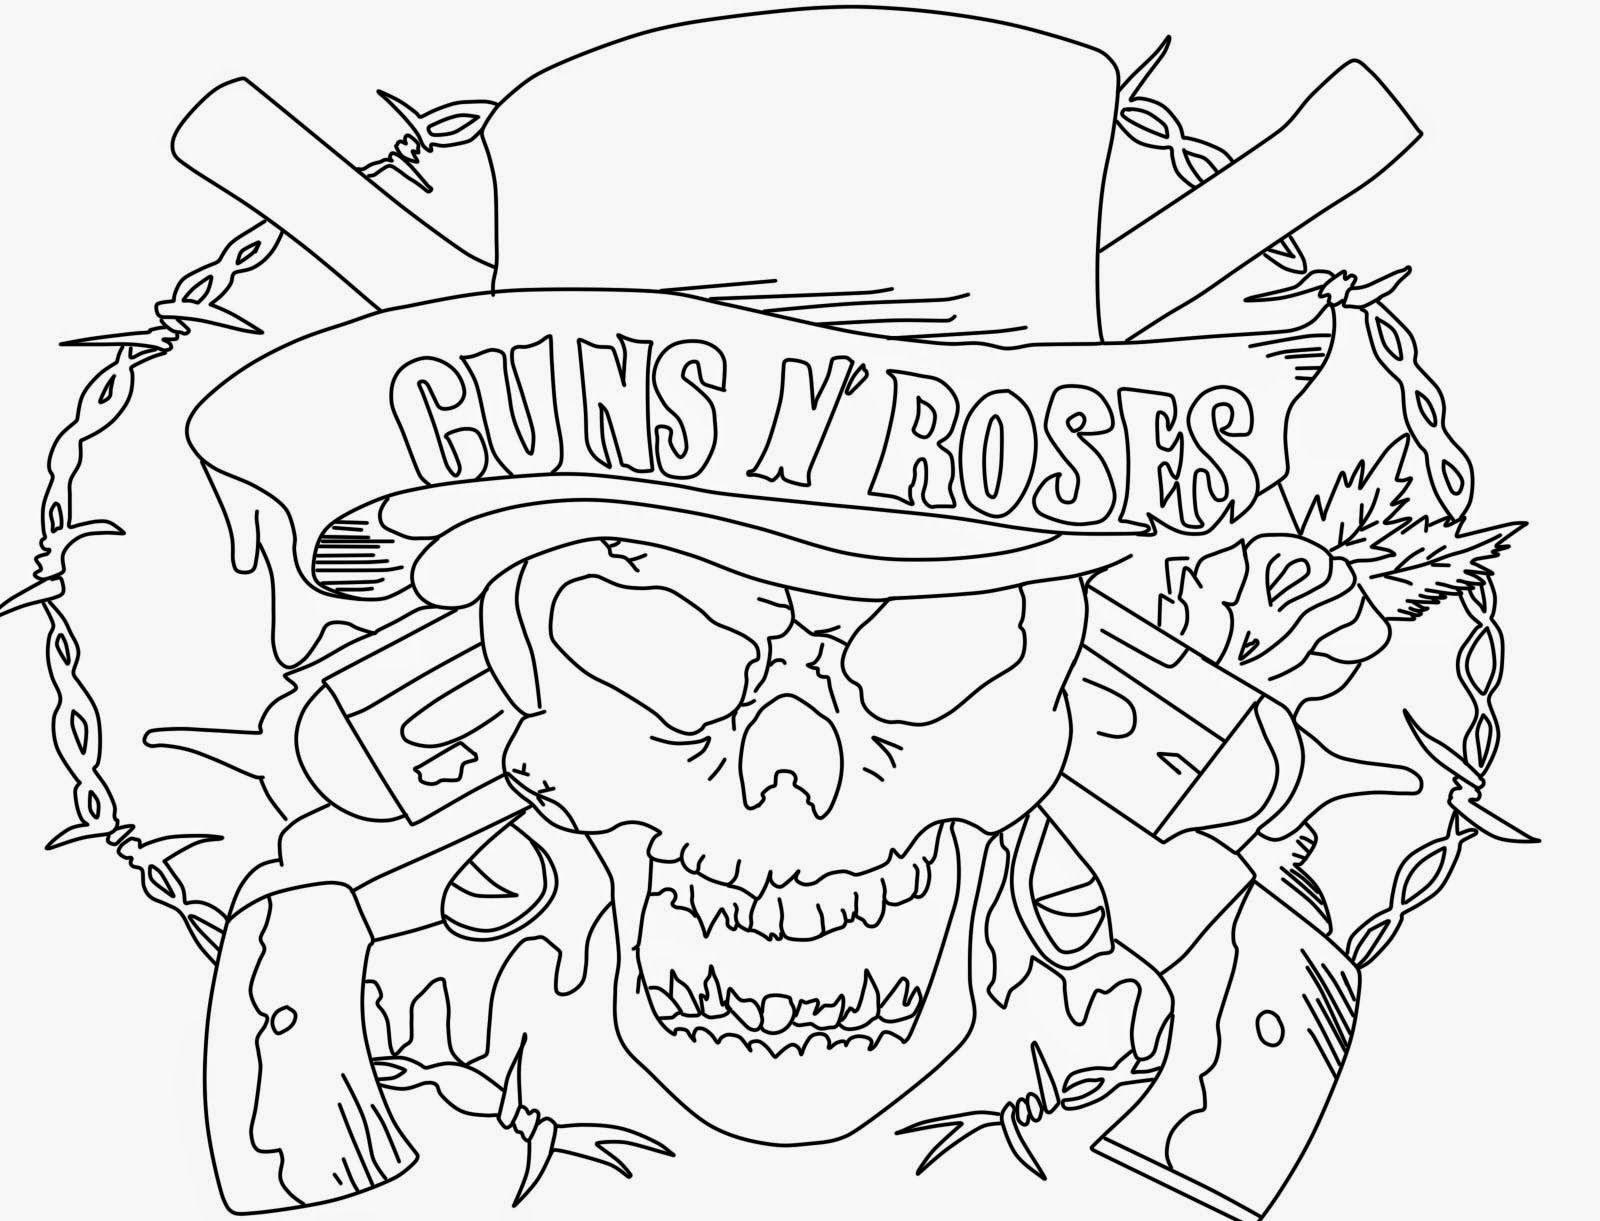 Guns and Roses Coloring Pages Logo - guns n roses coloring pages - 28 images - how to draw guns n roses ...